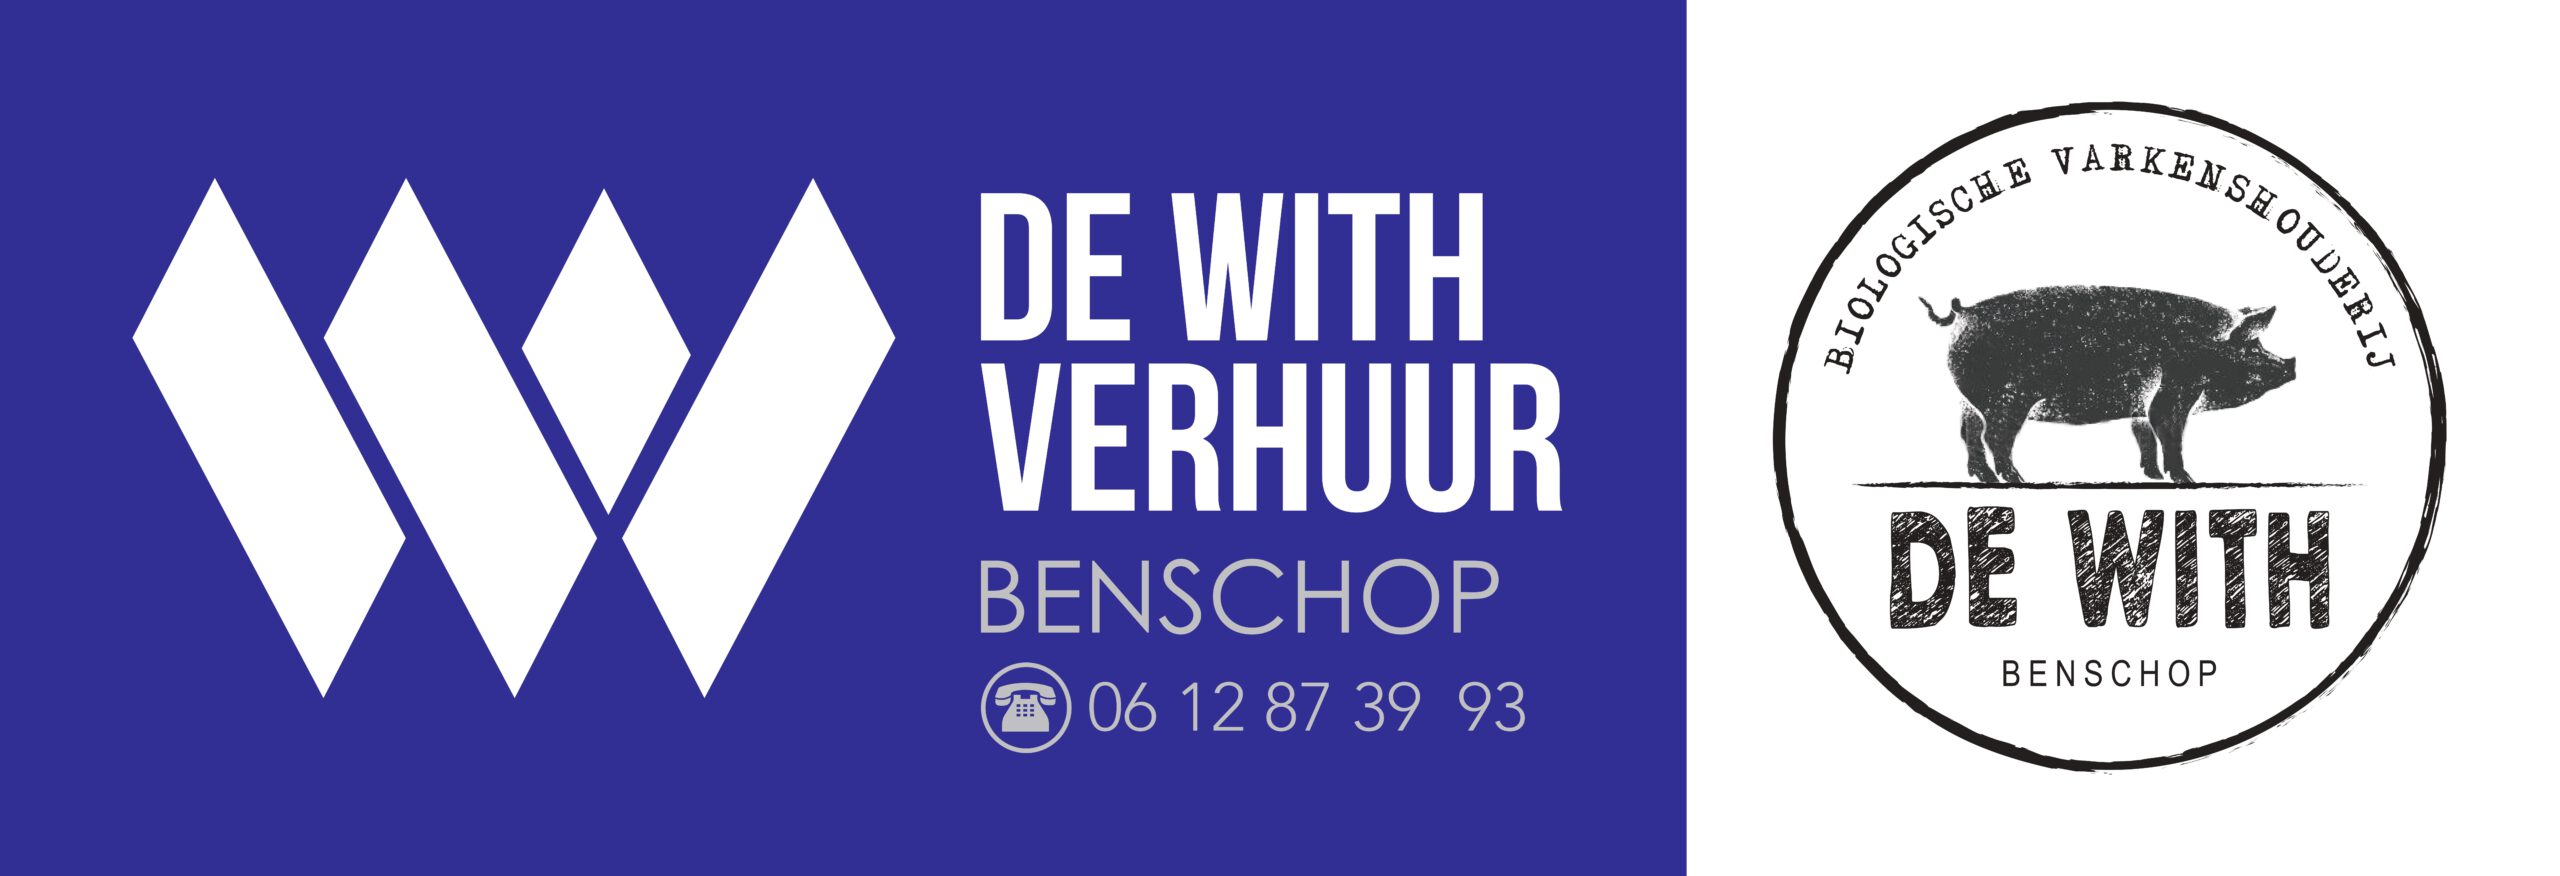 De_With_verhuur